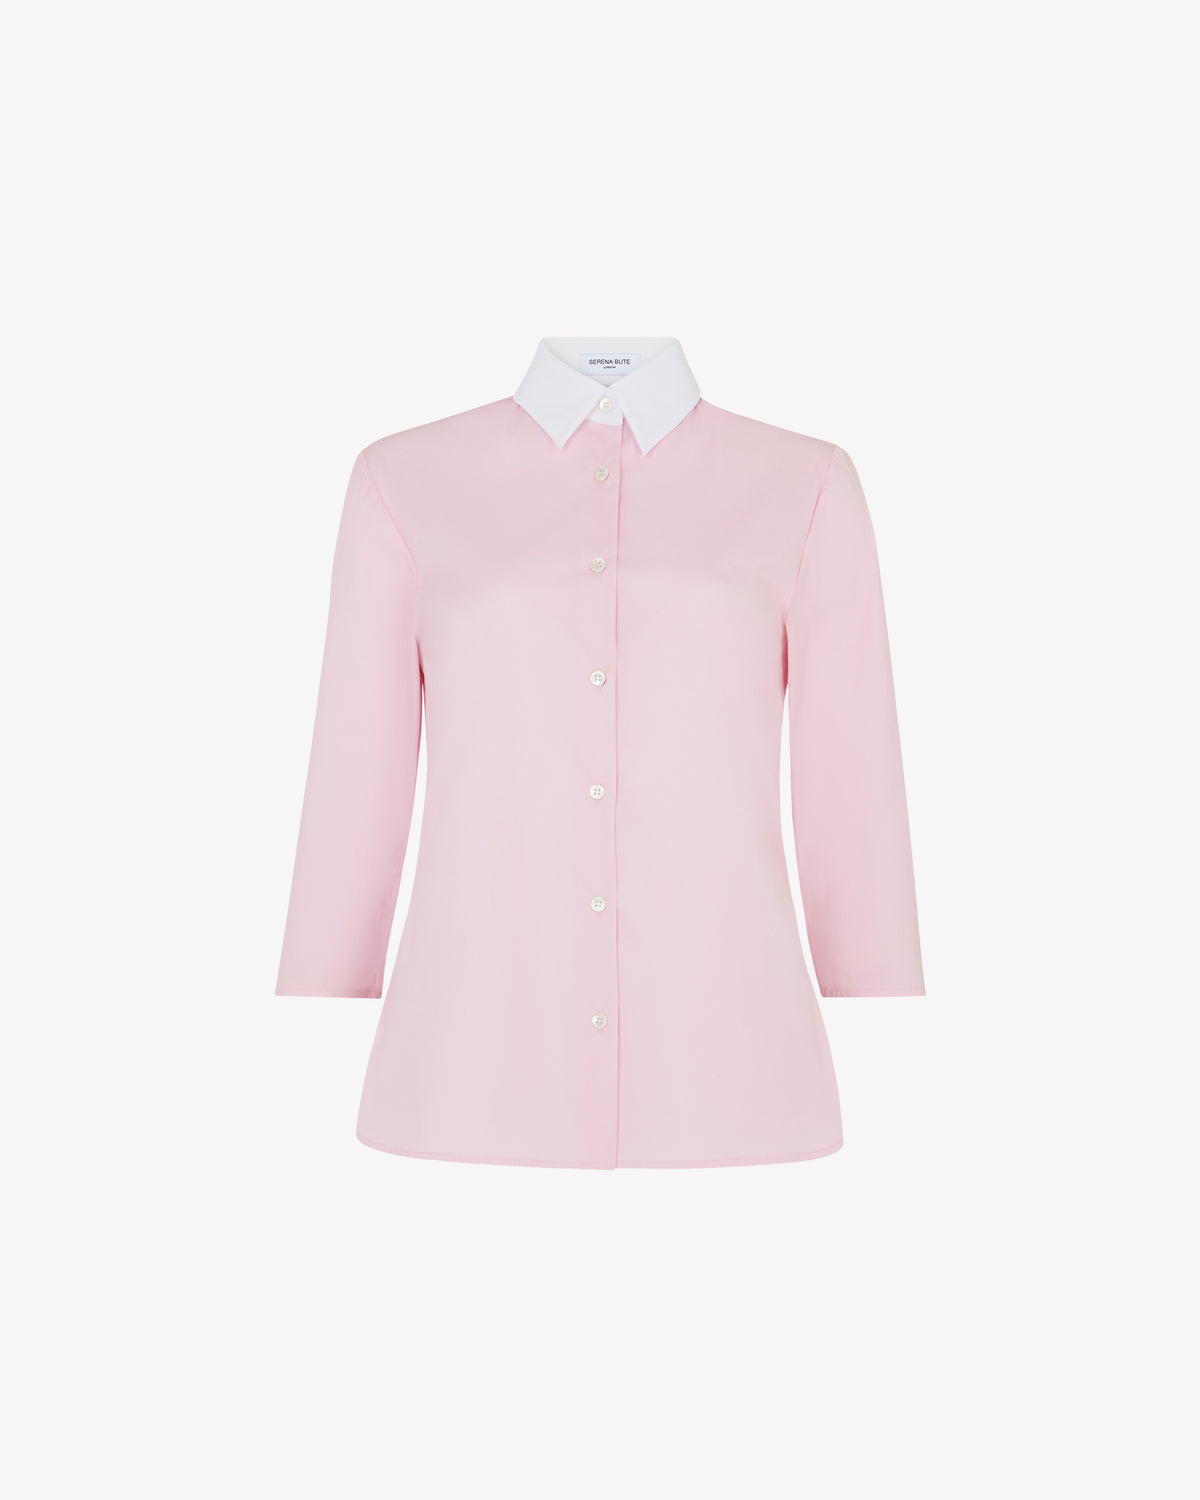 Capri Shirt - Rose Pink SERENA BUTE